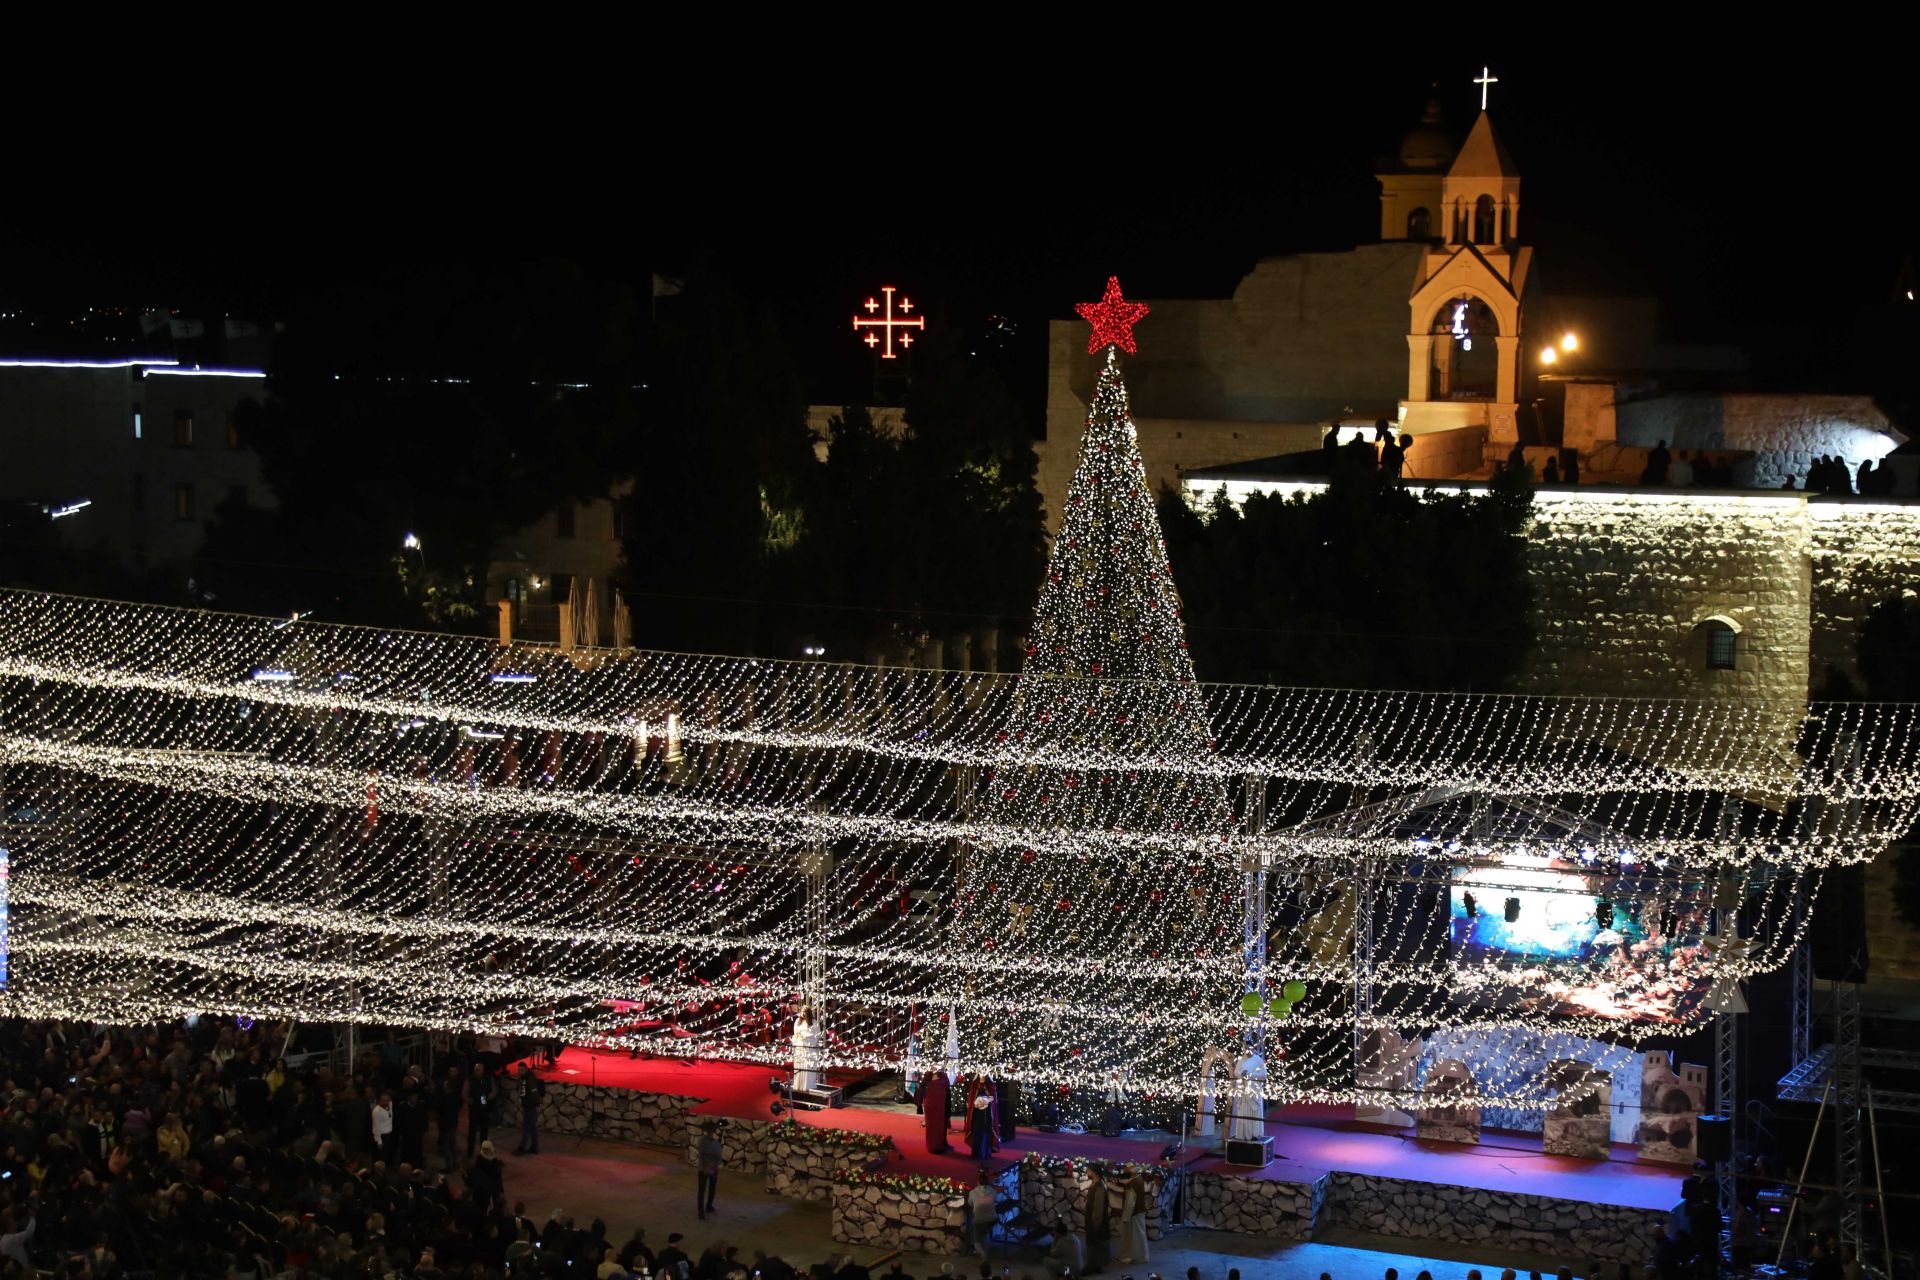 Събитието се състоя на площада пред църквата Рождество Христово - построена на мястото, където християните вярват, че Исус е роден